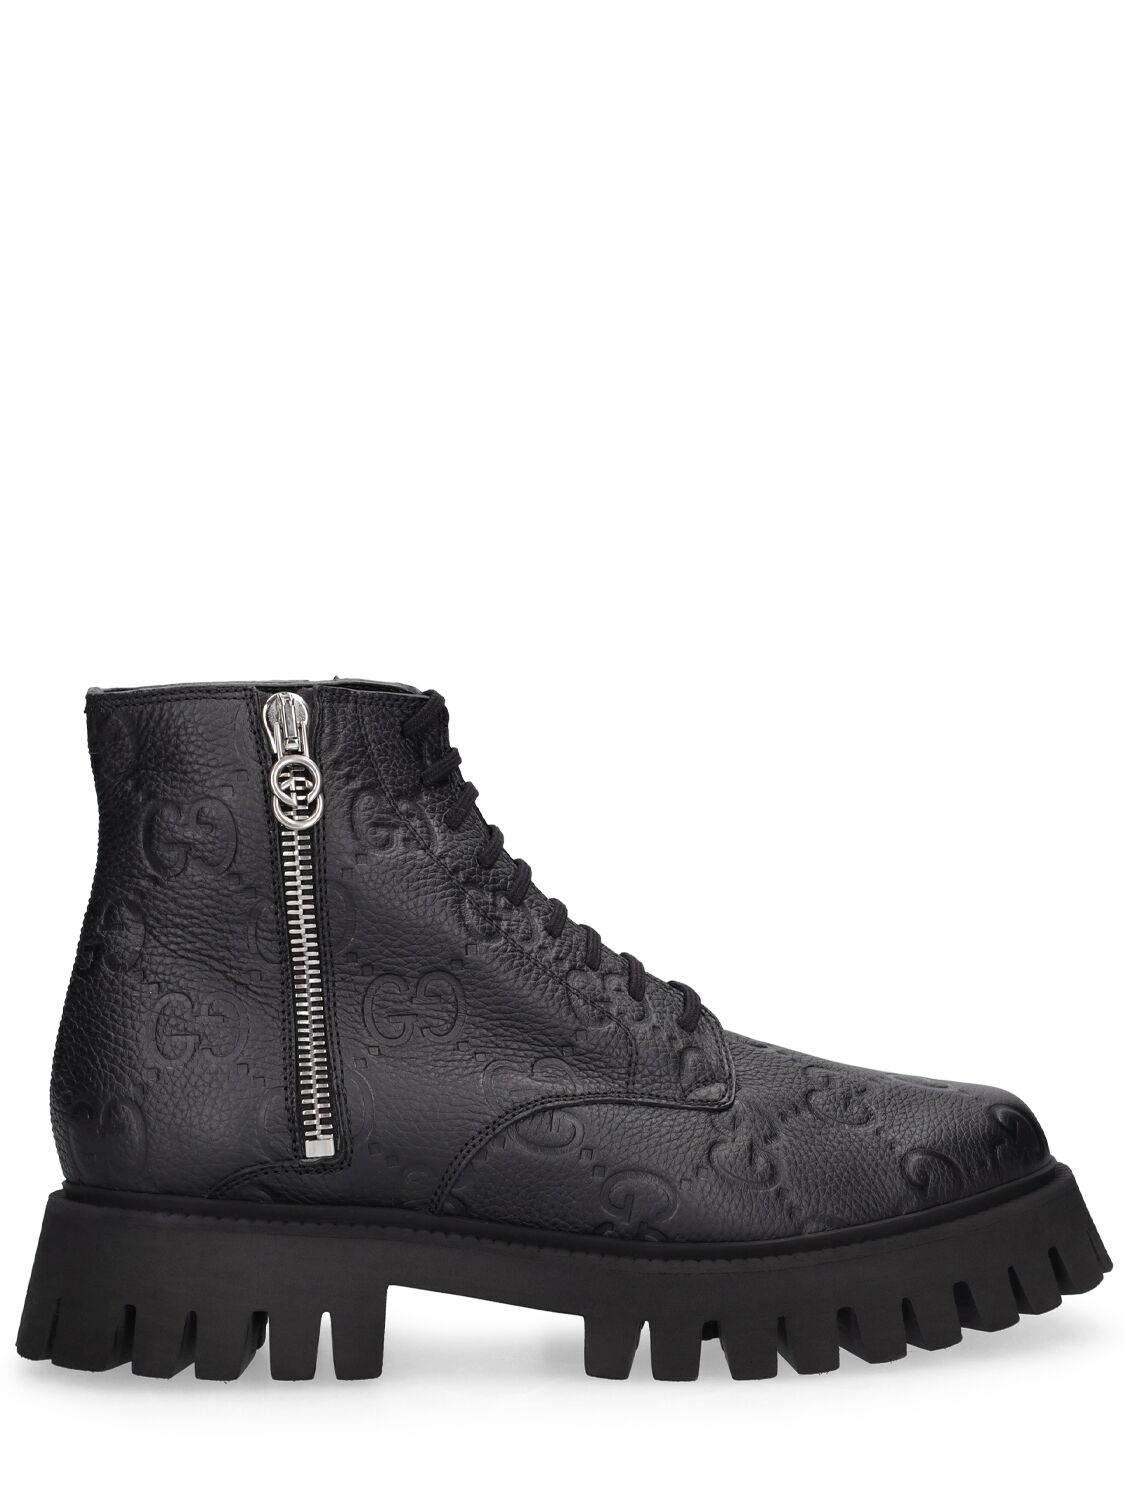 Gg Leather Boots - GUCCI - Modalova